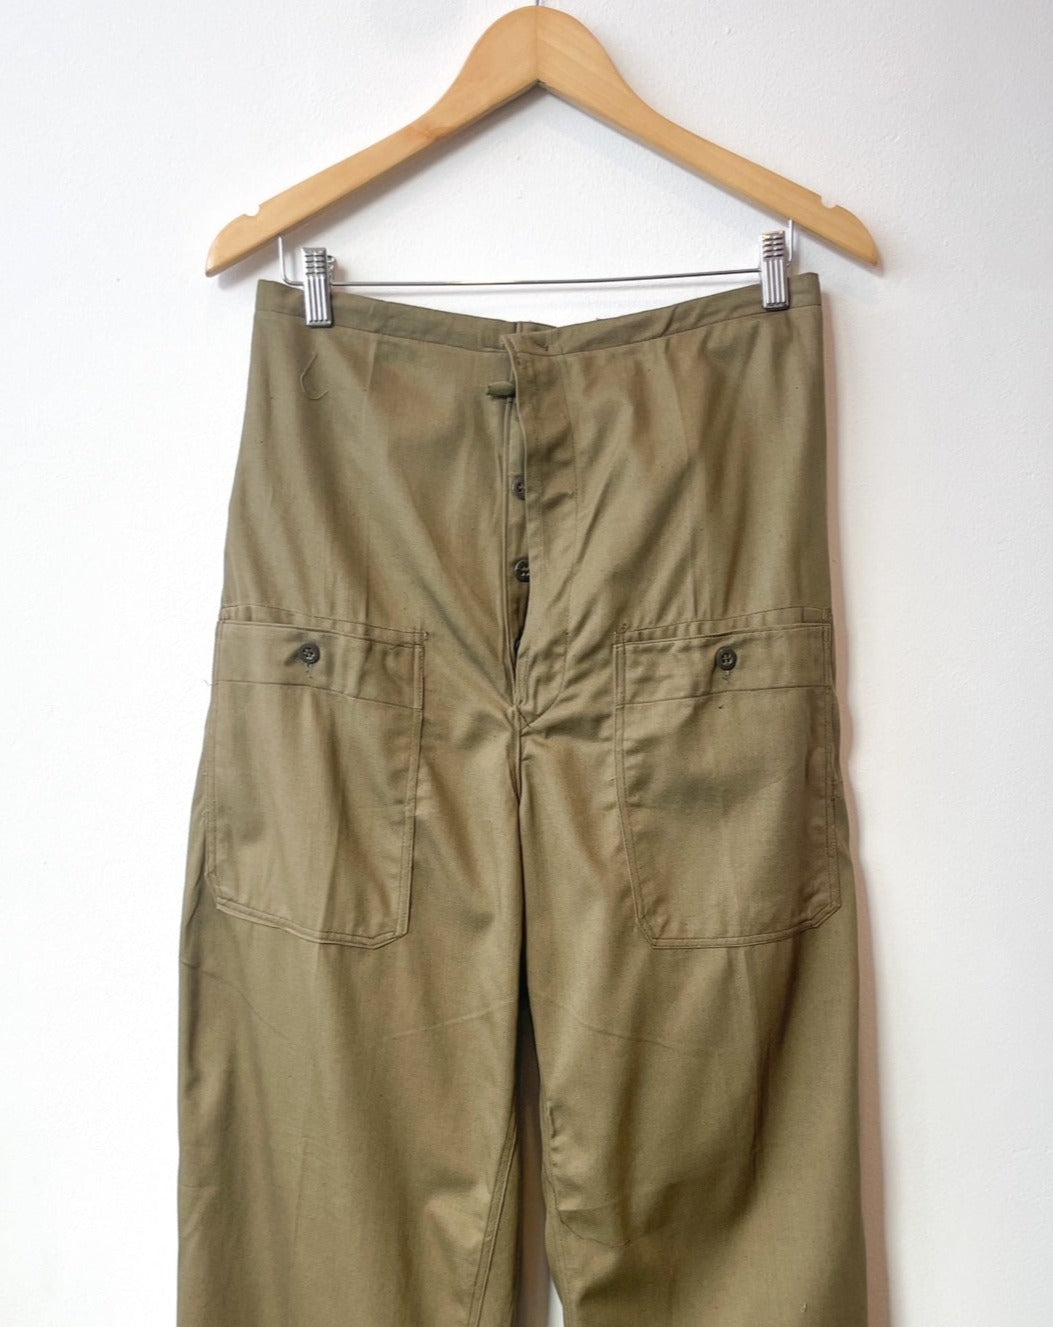 Vintage Drawstring Workwear Pants